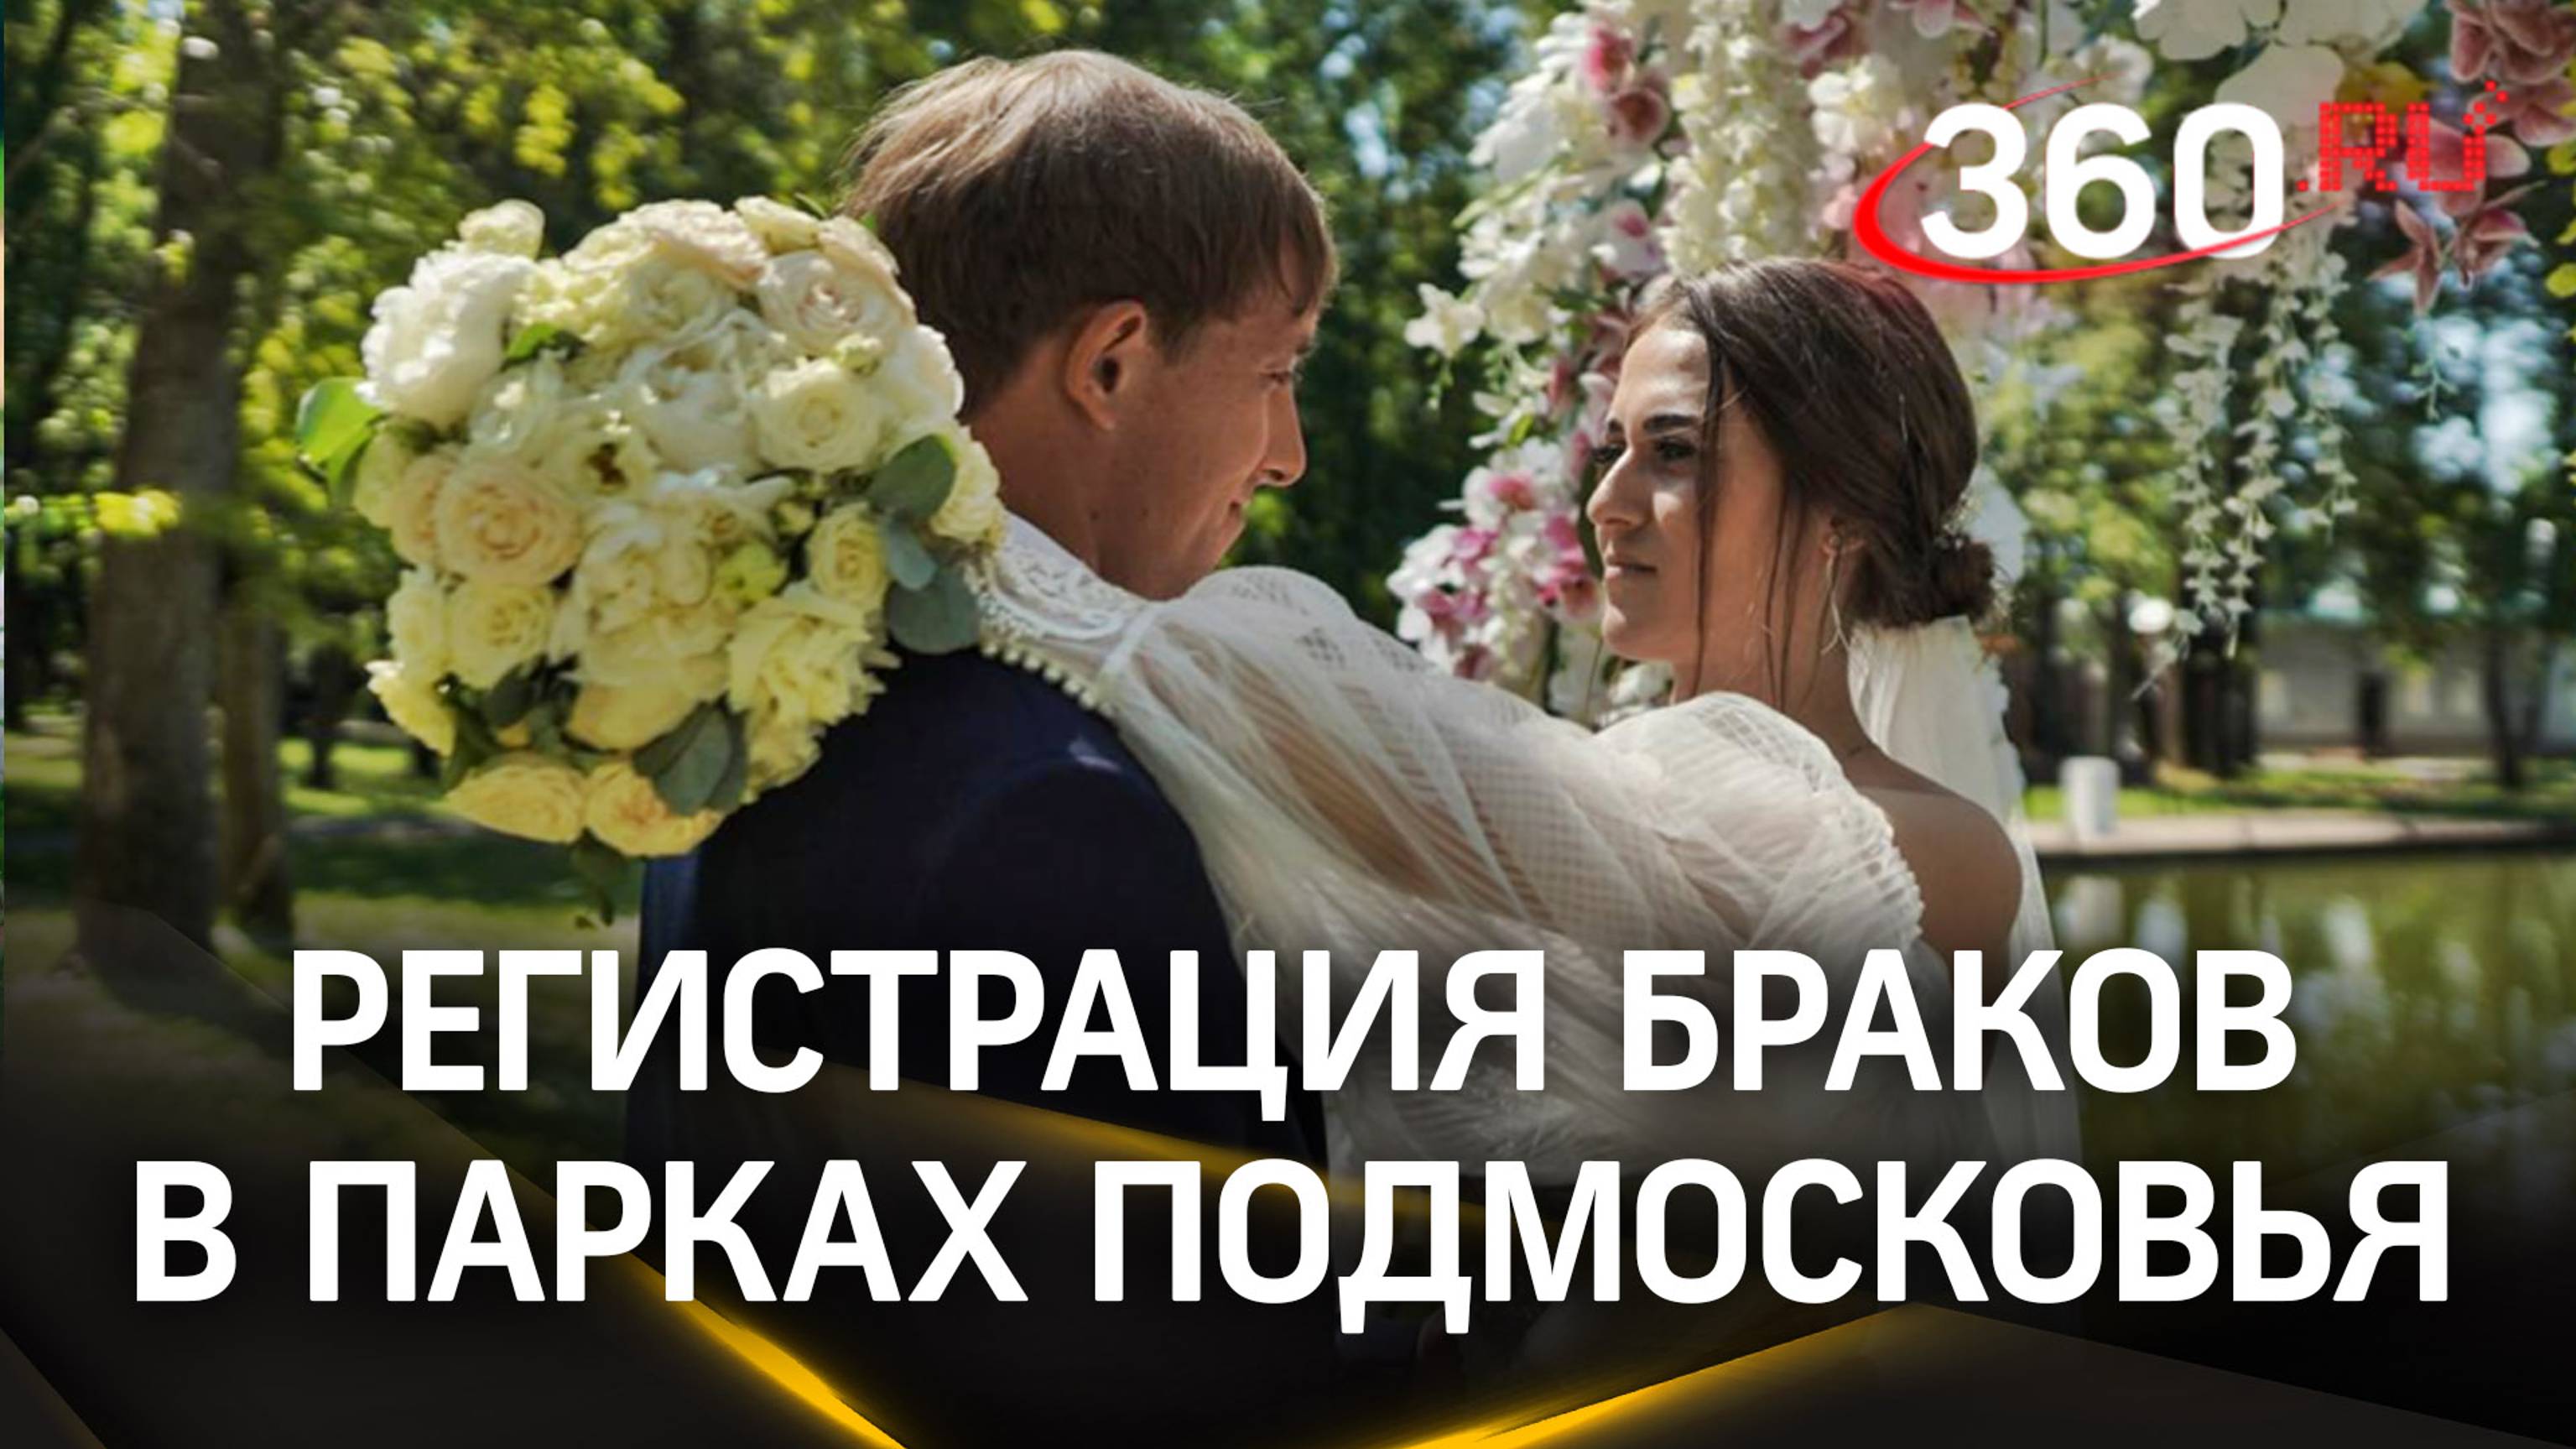 Парки Подмосковья открылись для регистрации браков